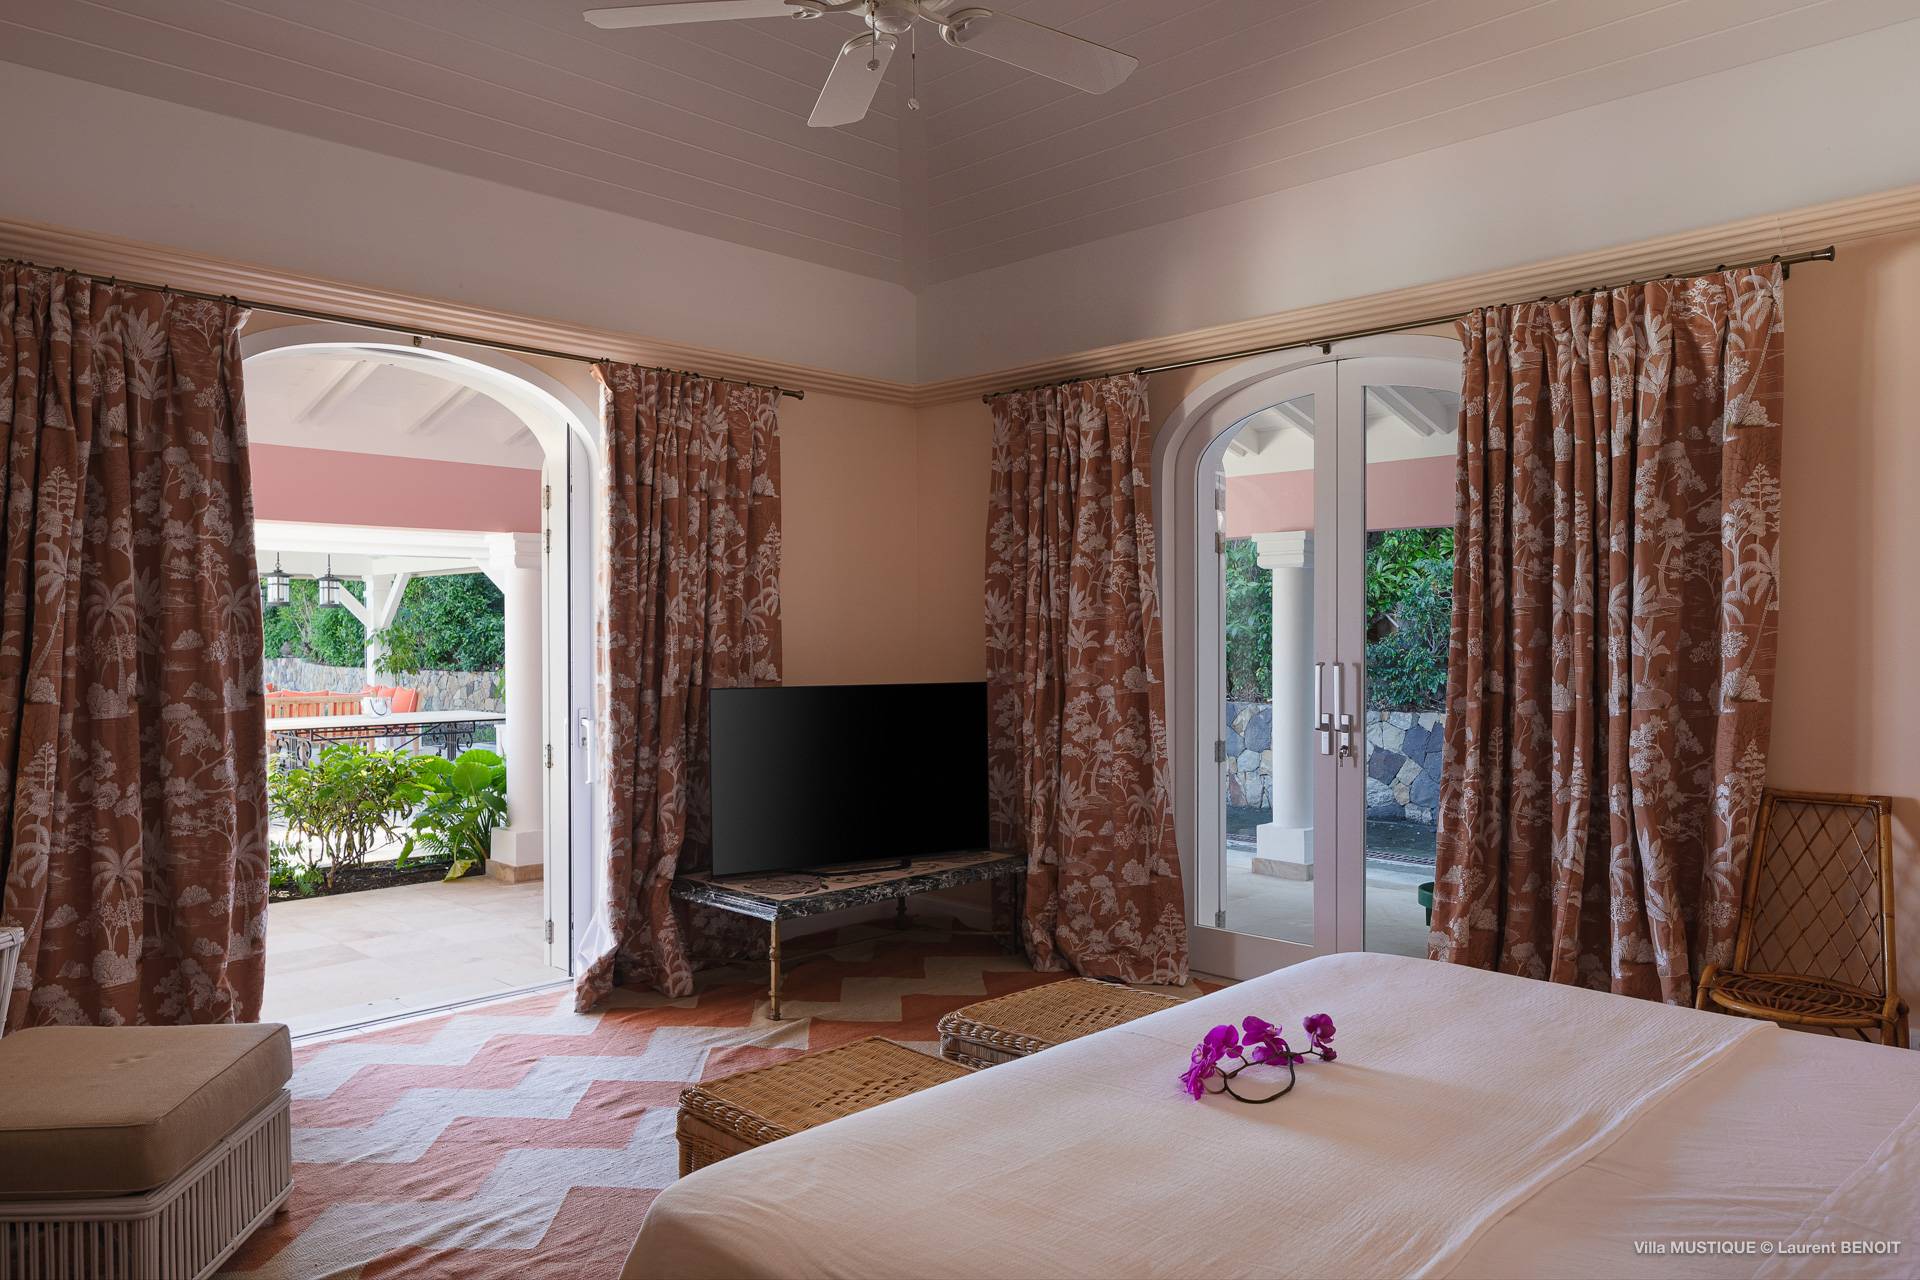 Villa Mustique Bedroom 1